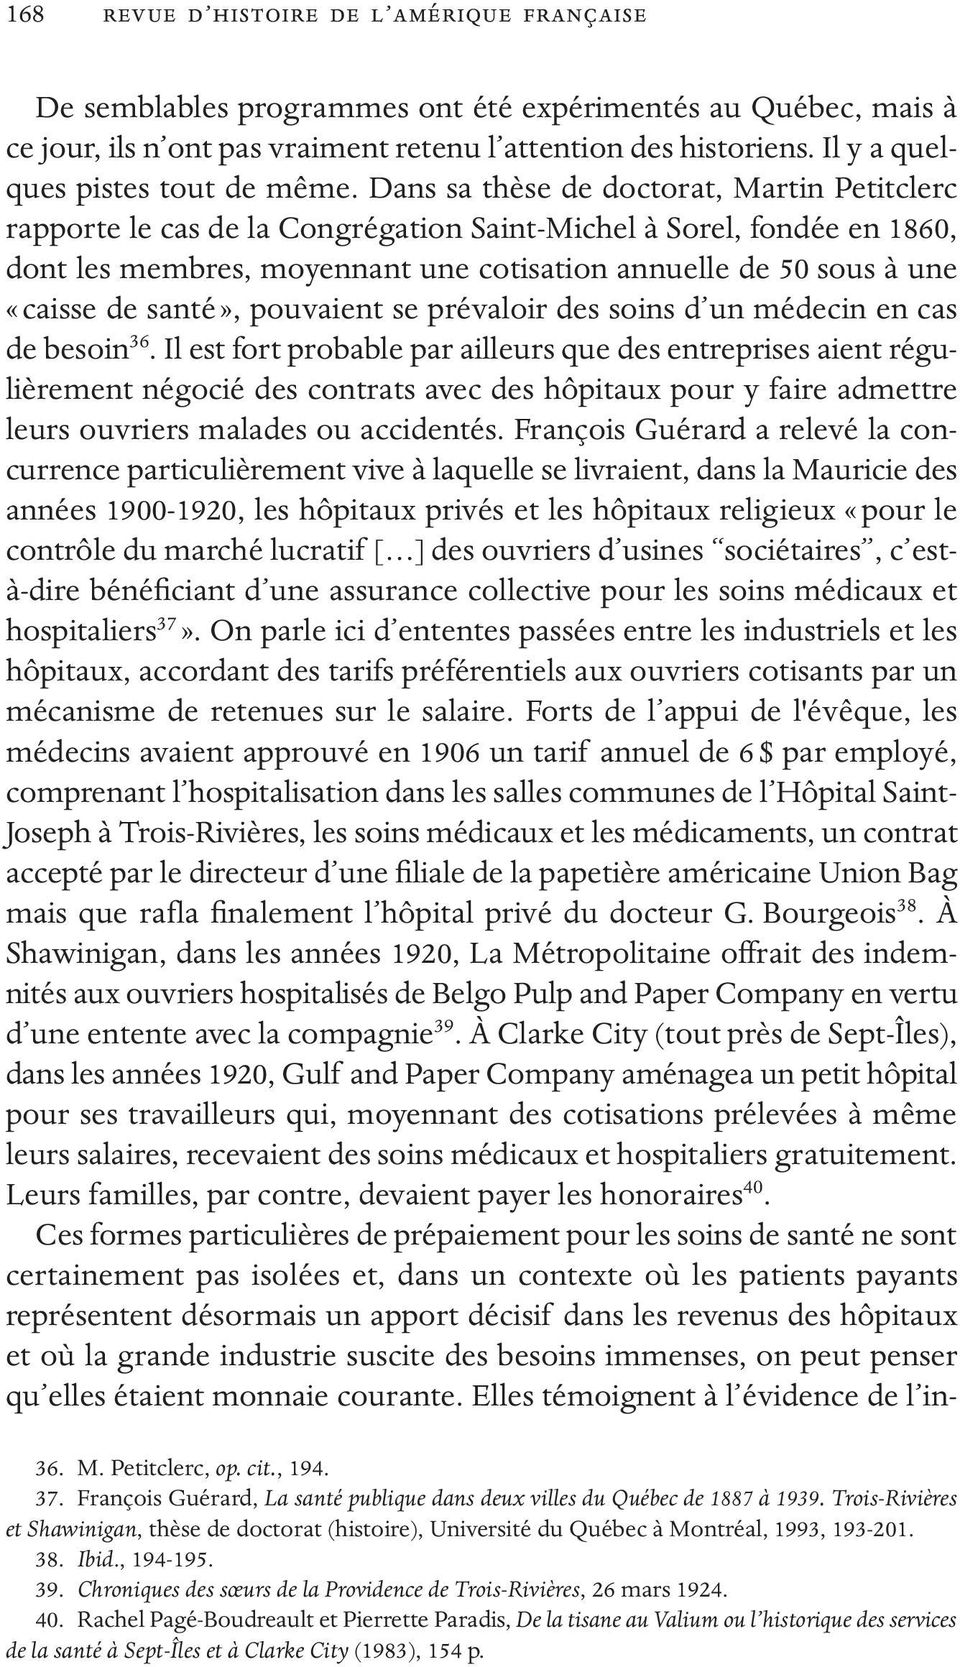 Dans sa thèse de doctorat, Martin Petitclerc rapporte le cas de la Congrégation Saint-Michel à Sorel, fondée en 1860, dont les membres, moyennant une cotisation annuelle de 50 sous à une «caisse de